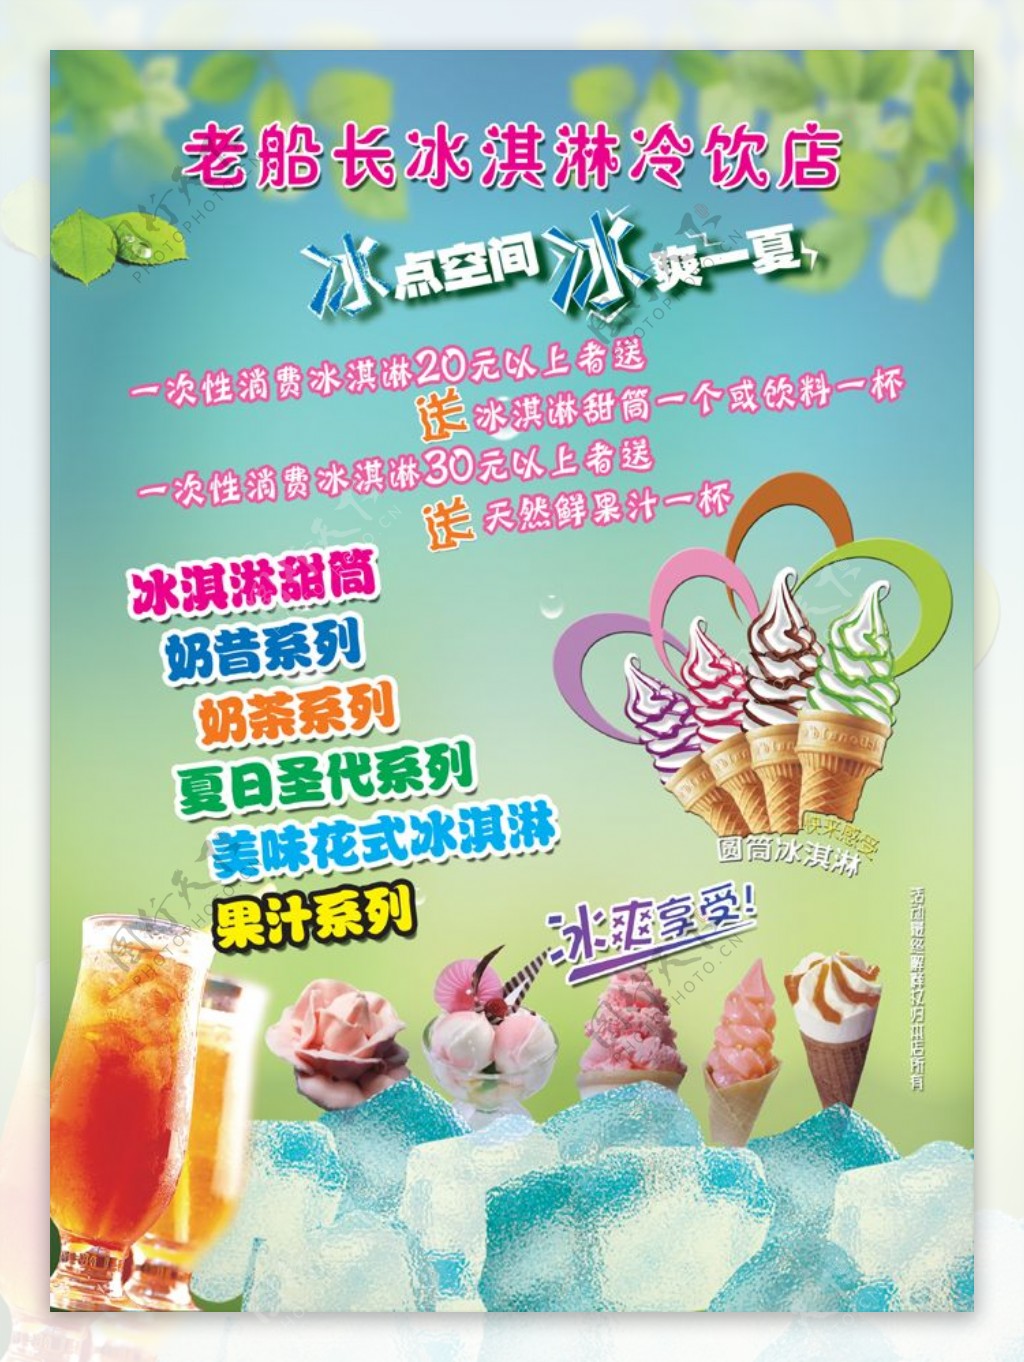 夏日冰激凌冷饮店宣传海报